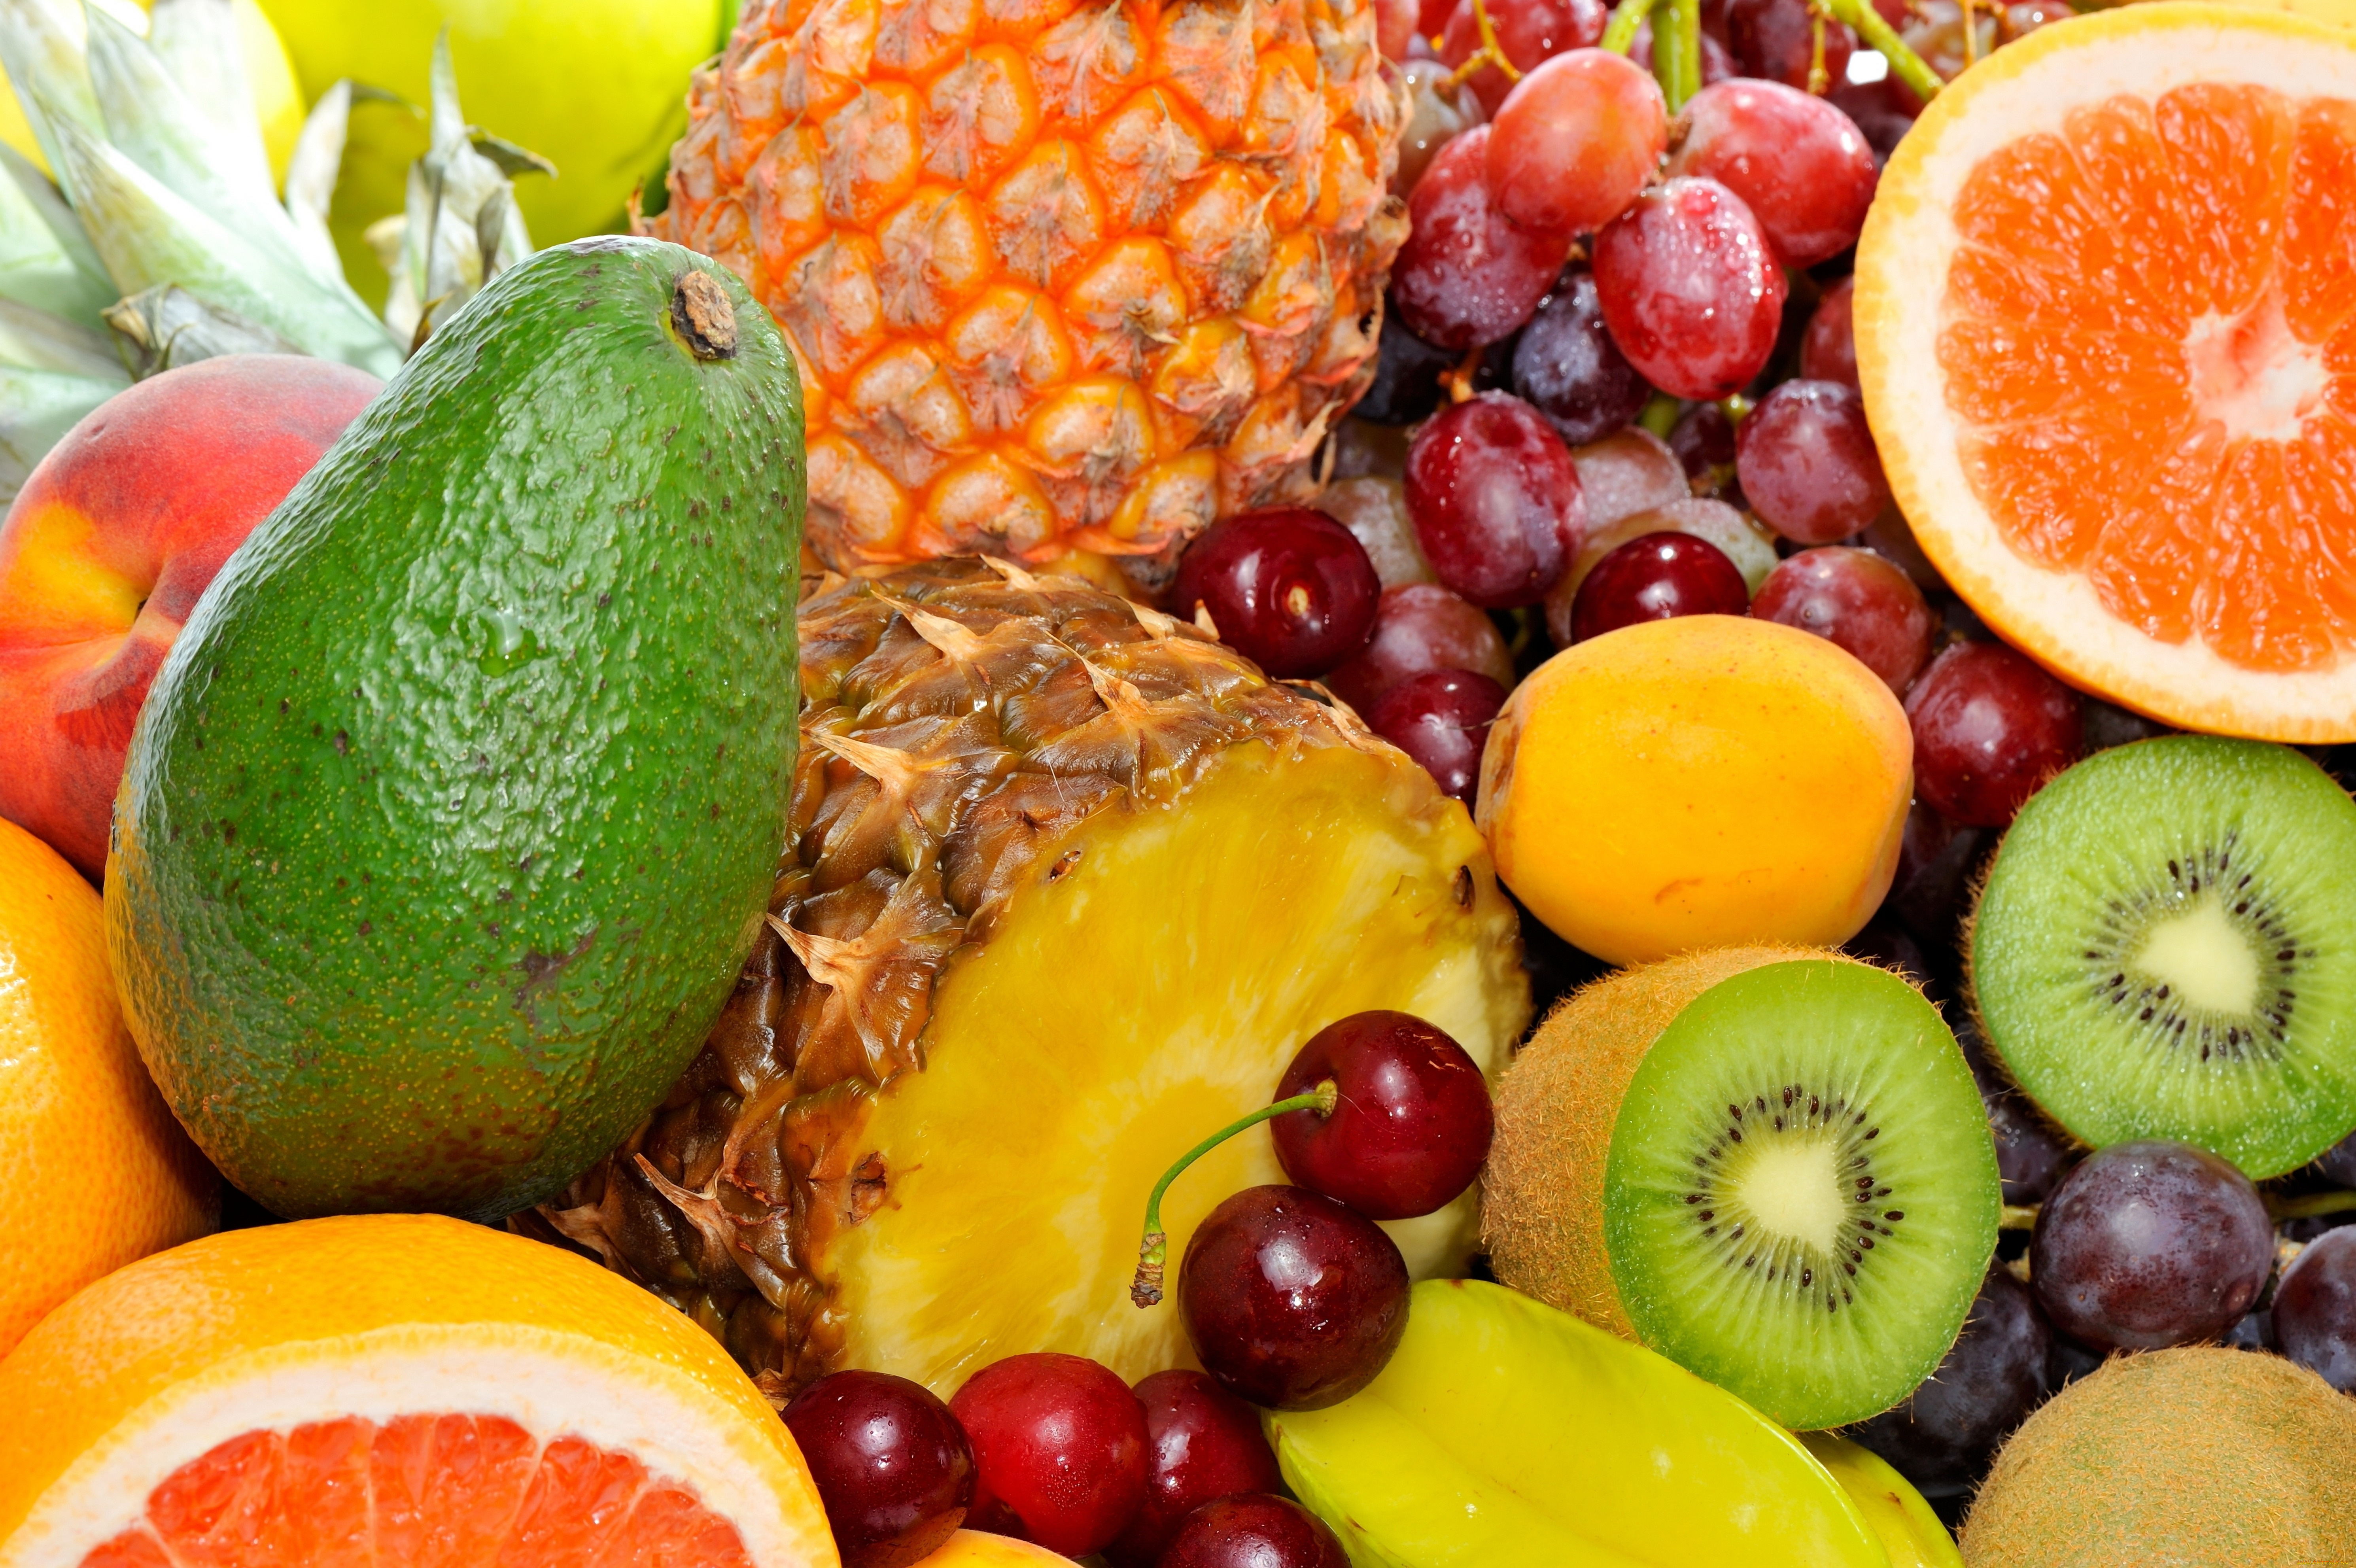 еда, фрукты, ягоды, виноград, киви, грейпфруты, карамбола, ананас, авокадо, персики, черешня, абрикосы